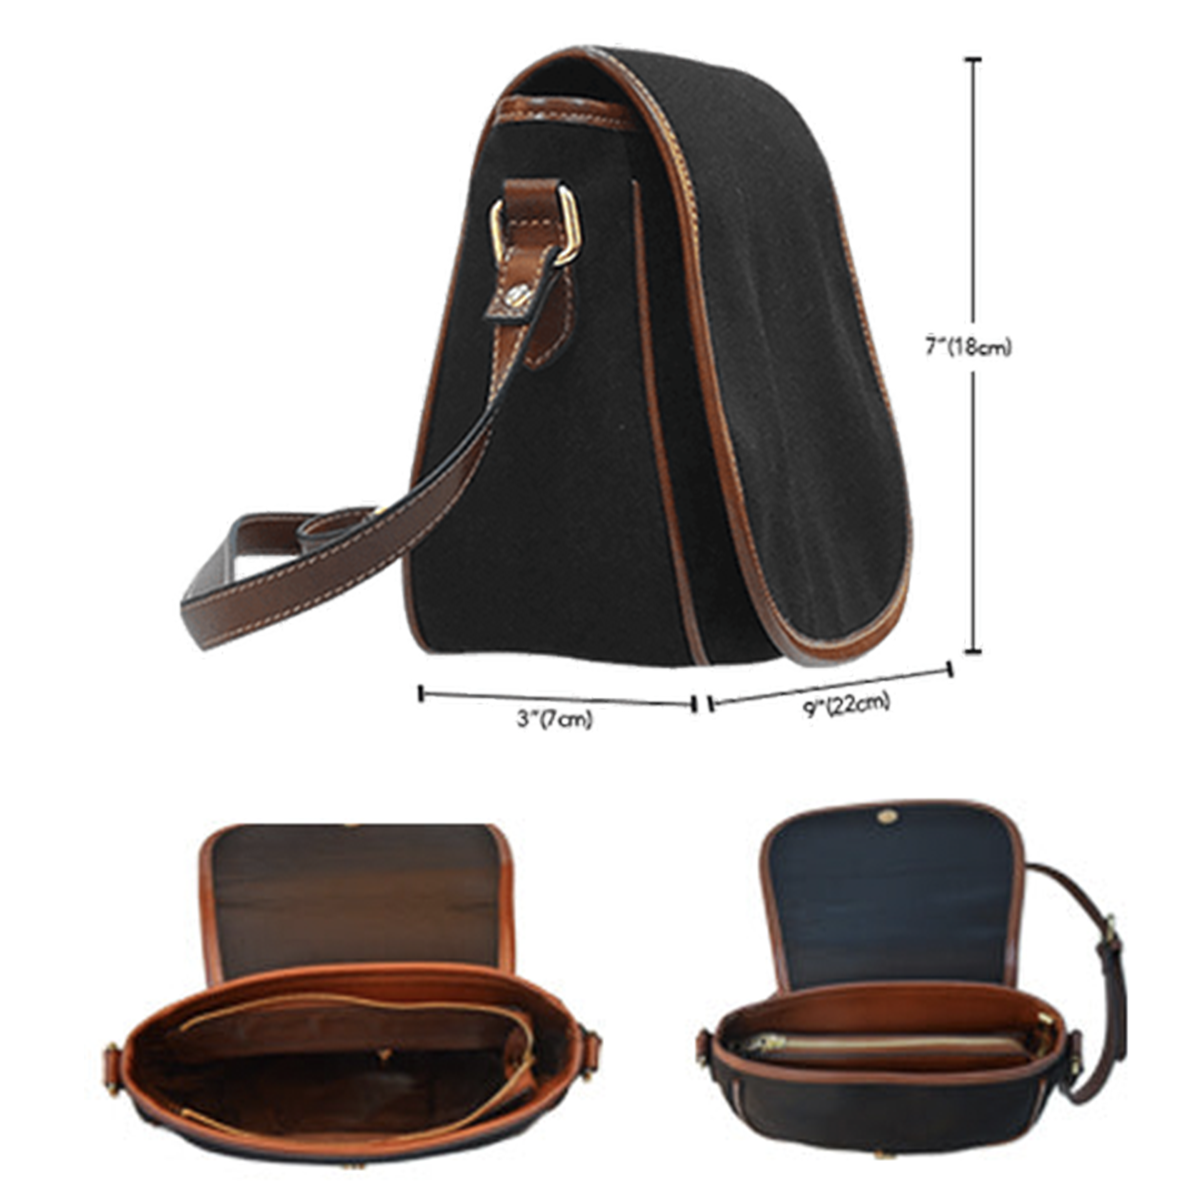 Colquhoun Modern Tartan Saddle Handbags